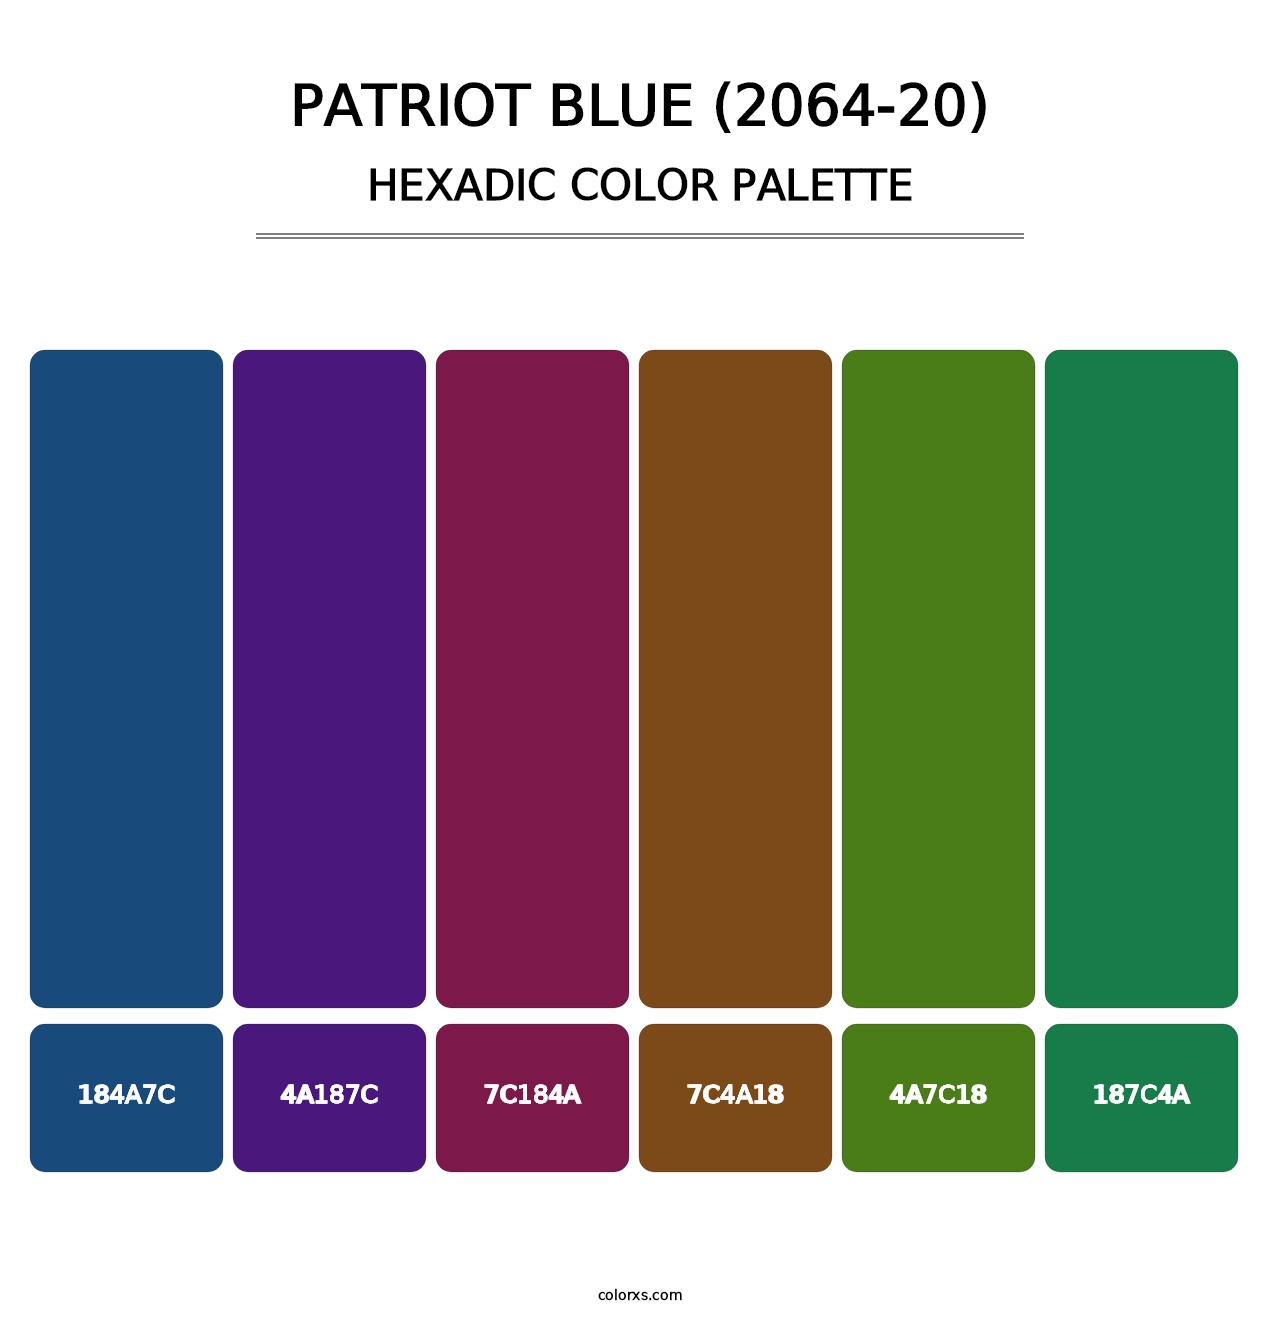 Patriot Blue (2064-20) - Hexadic Color Palette